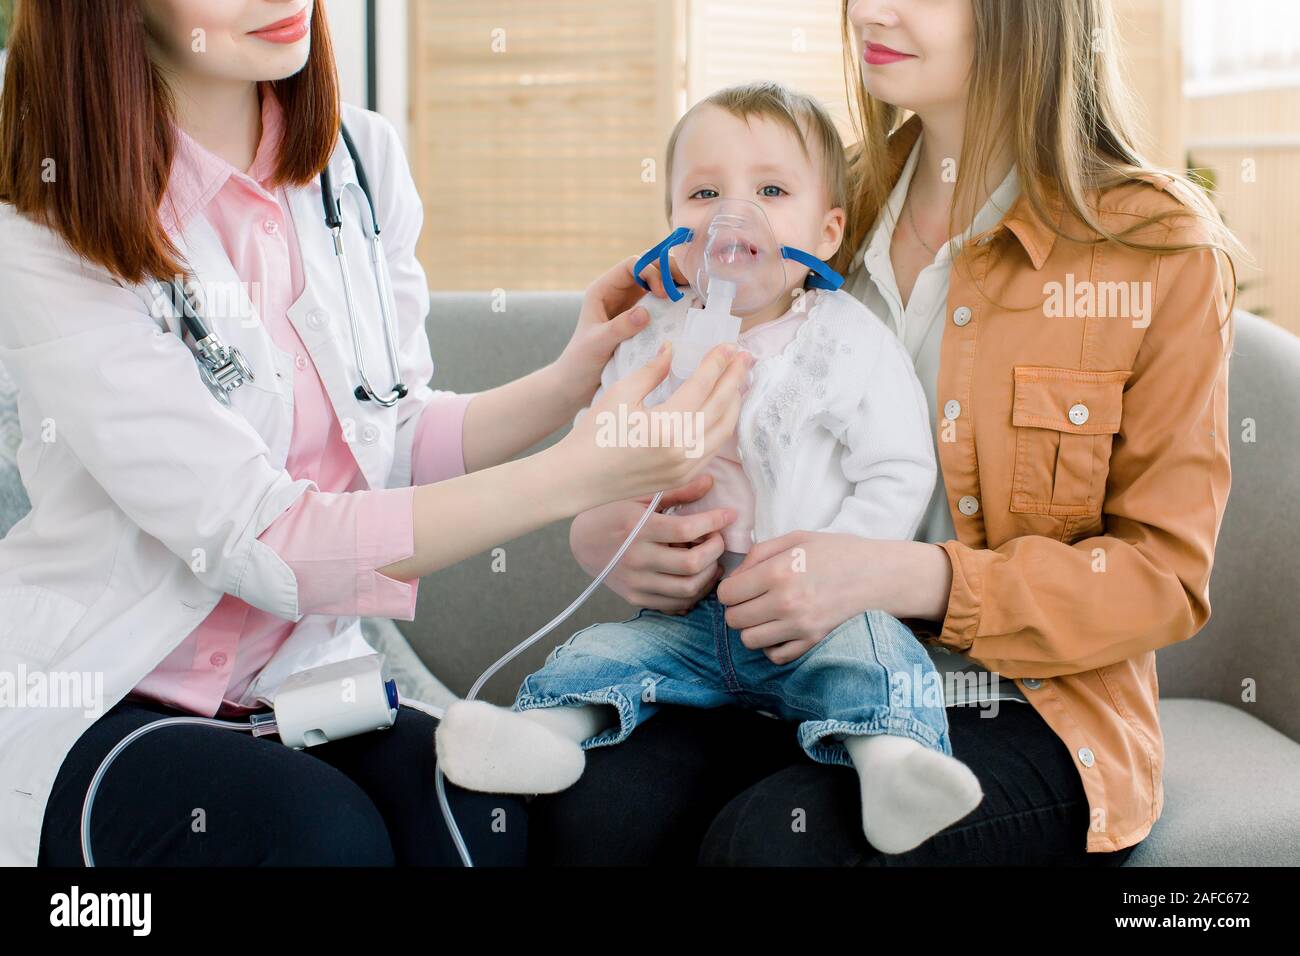 Frau Doktor halten eine Maske Dampf Inhalator für kleine Baby. baby baby  erhält ein inhalationsgerät Behandlung durch die Gesichtsmaske  Stockfotografie - Alamy